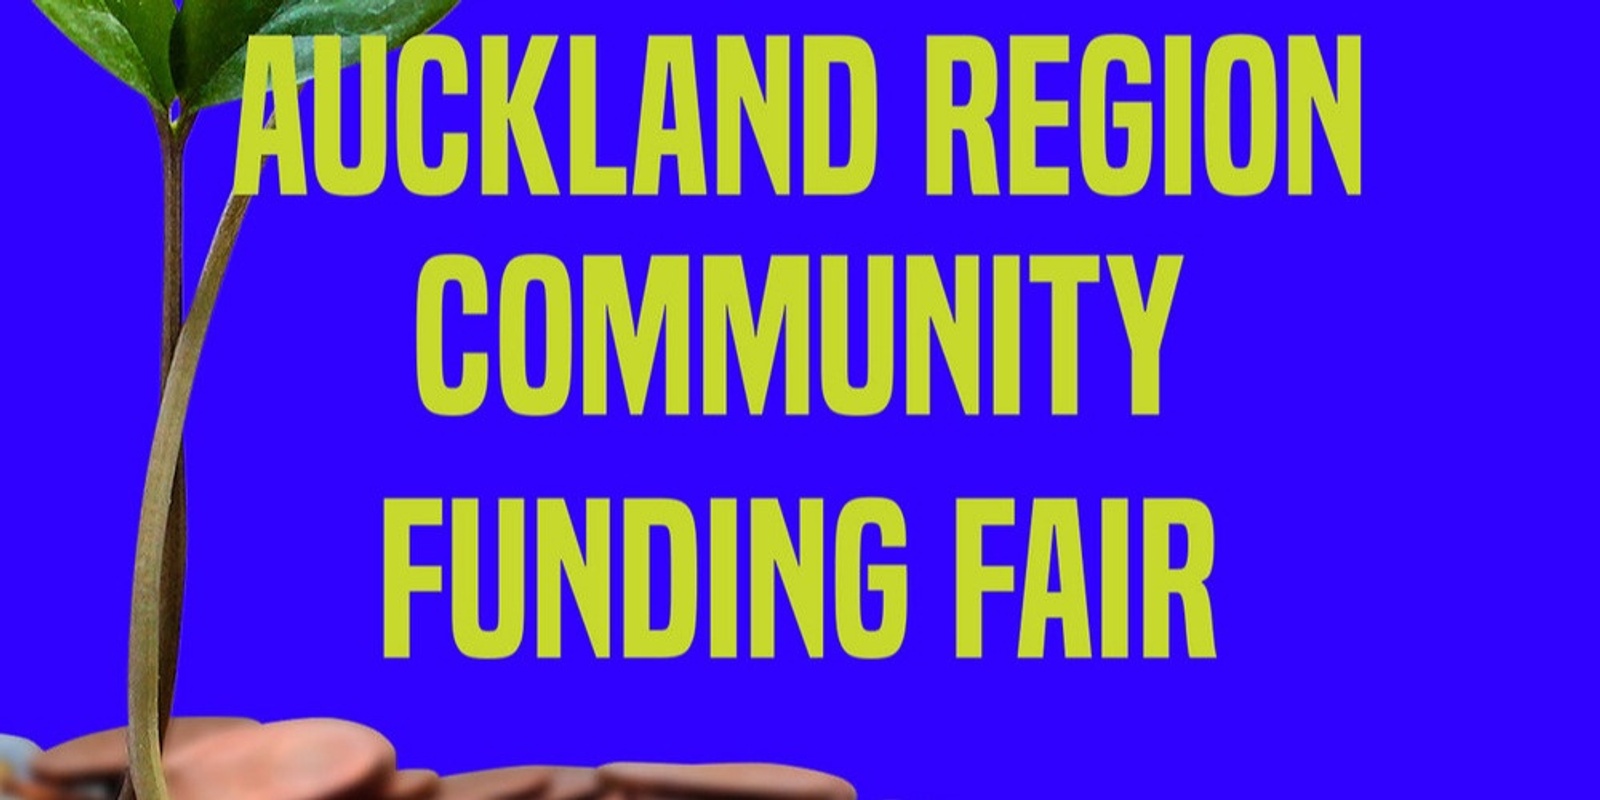 Auckland Region Community Funding Fair V2